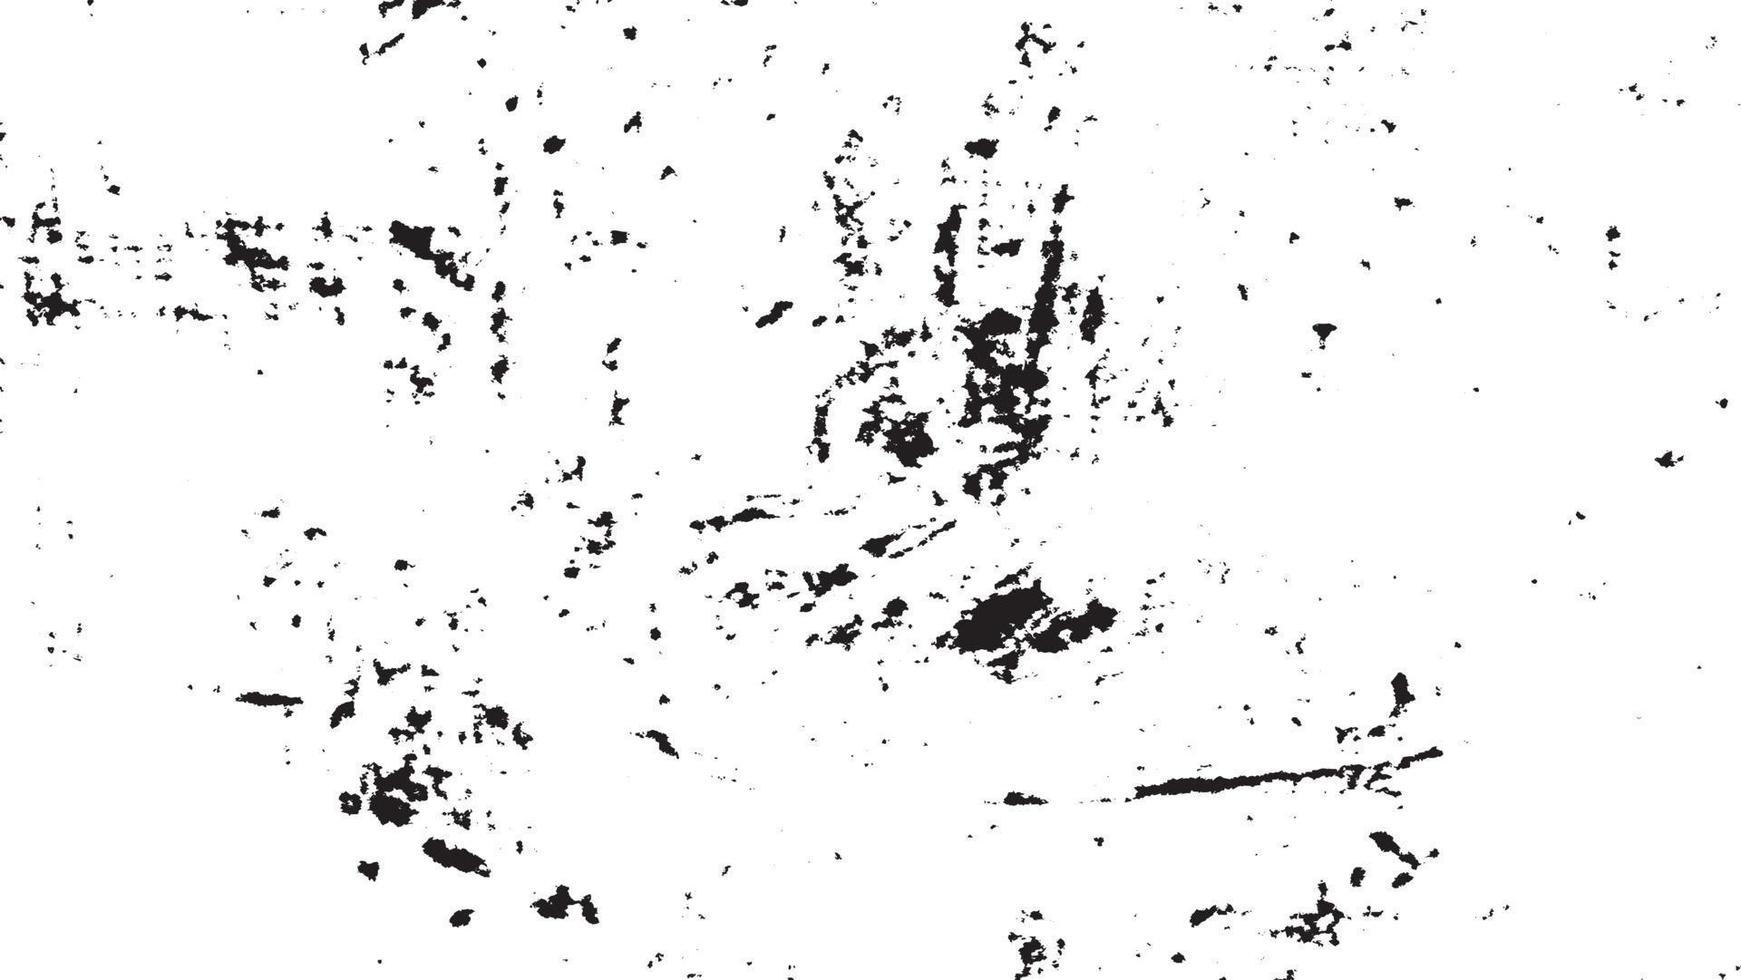 retro verontrust grunge texturen, grunge achtergrond zwart wit abstract, vector verontrust aarde overlappen.